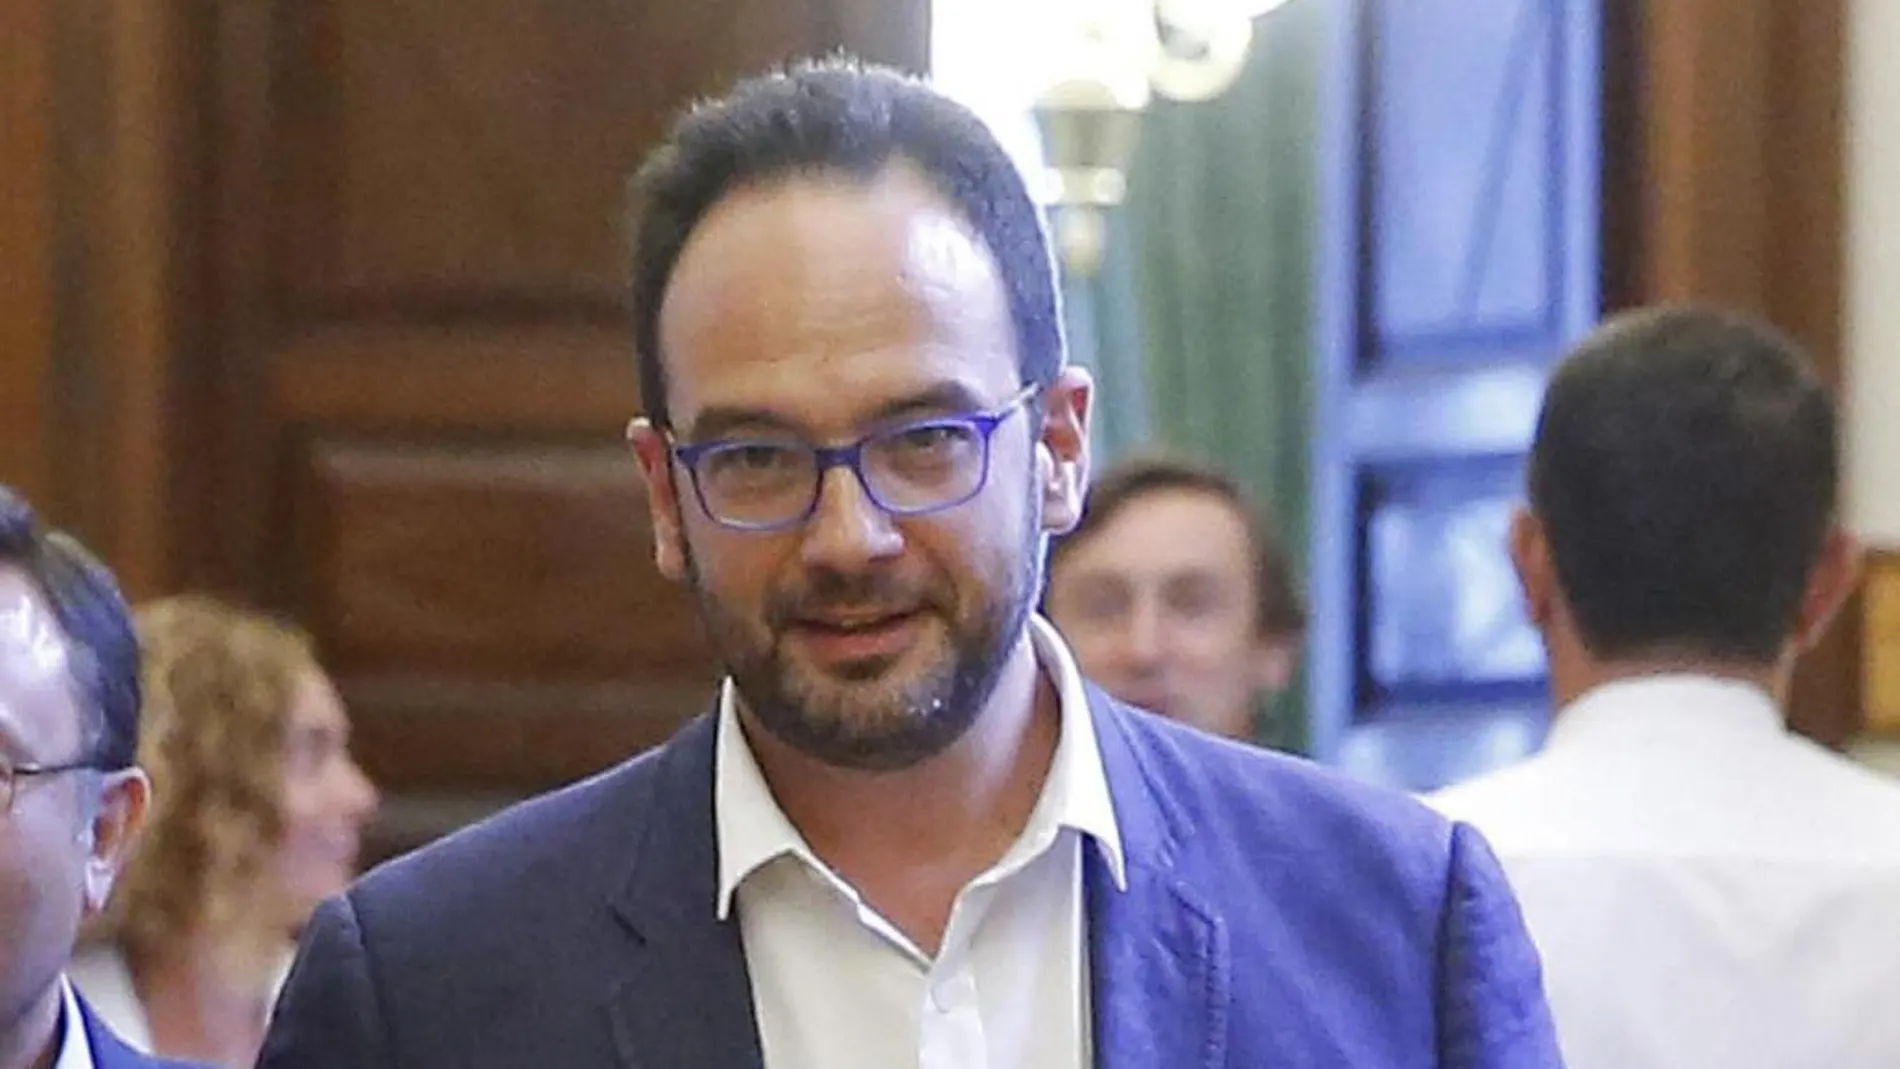 El portavoz del PSOE, Antonio Hernando, ha sido el encargado de valorar el discurso de Rajoy